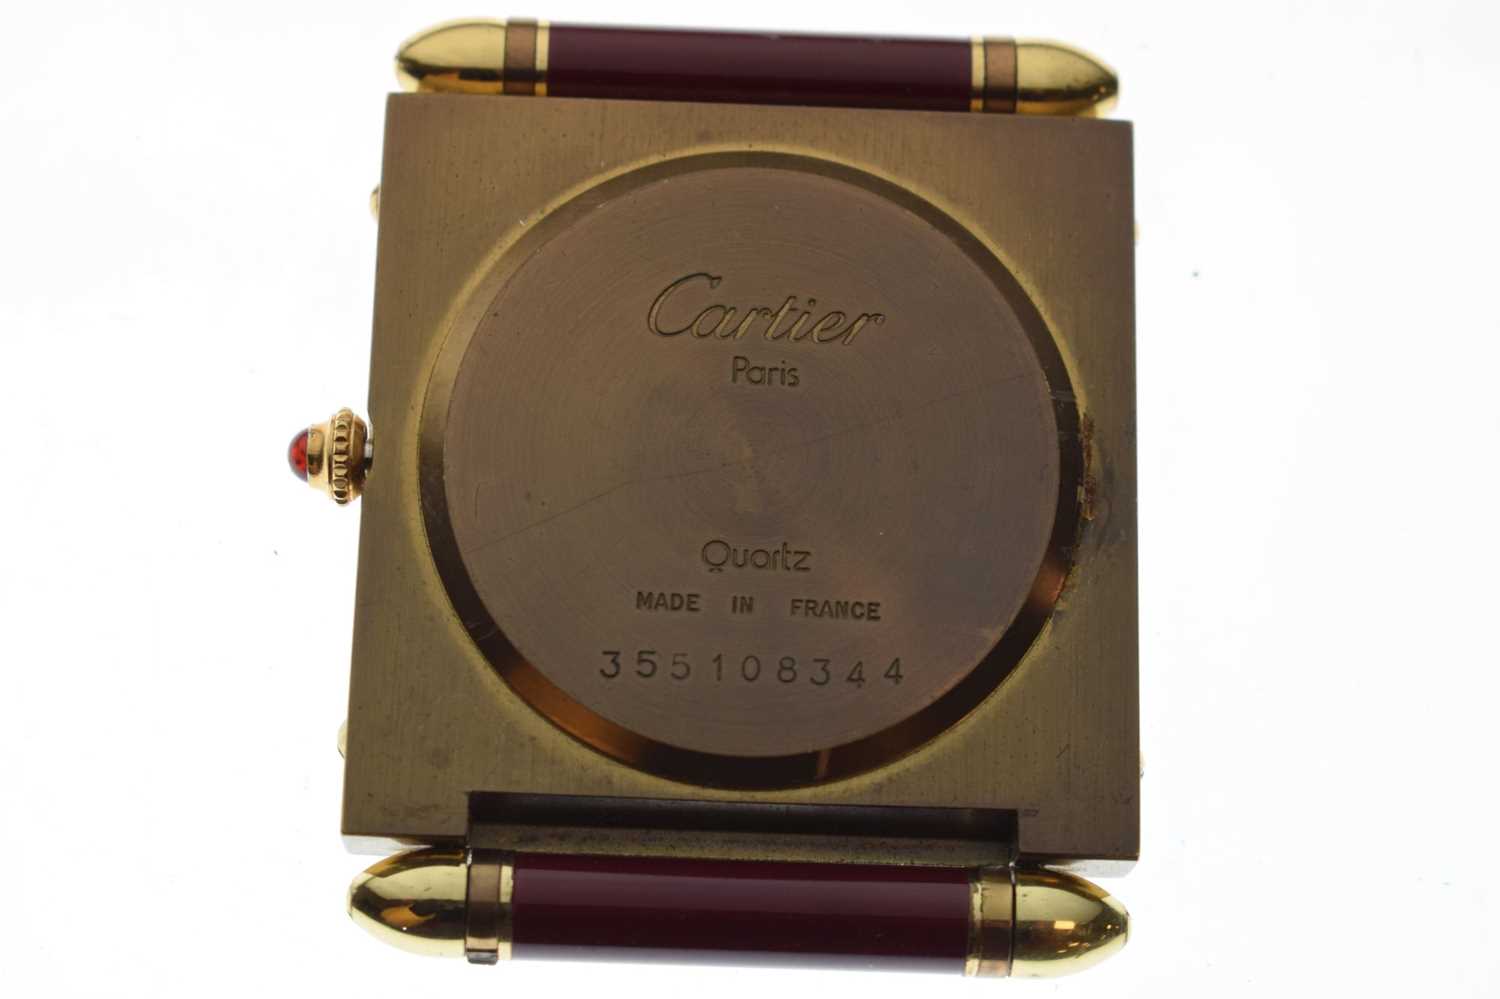 Cartier - Pendulettes De Voyage quartz travel timepiece - Image 7 of 8